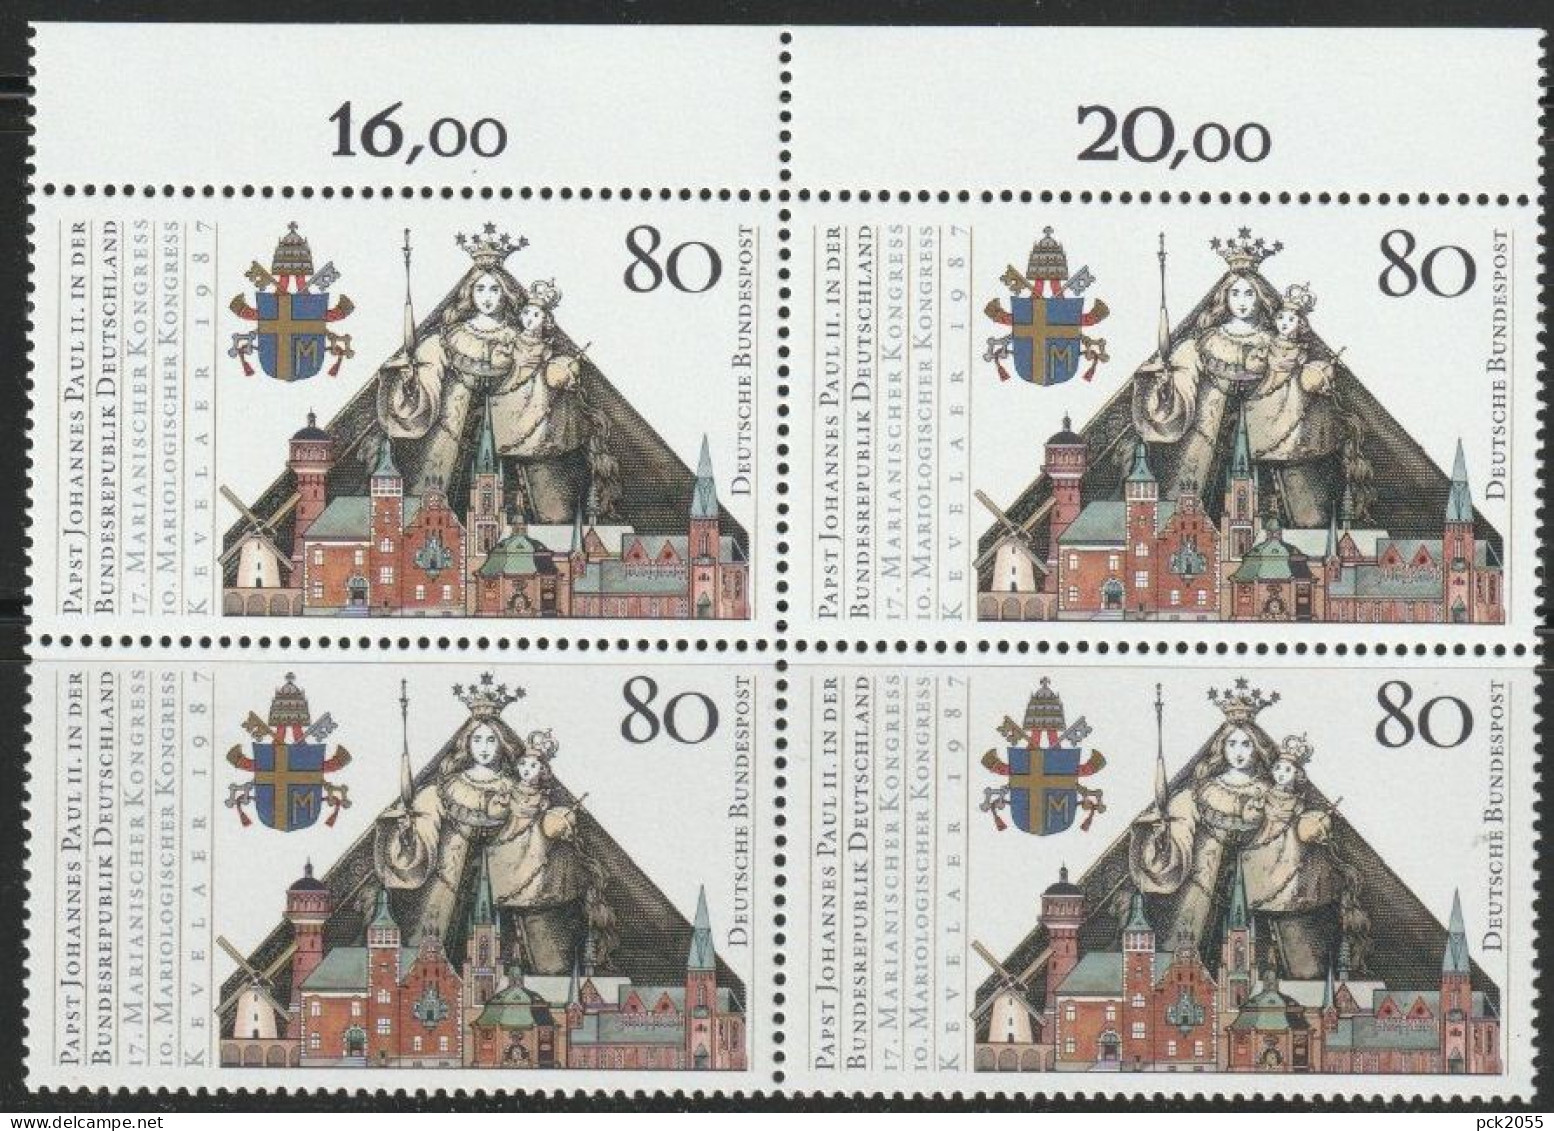 BRD 1987 MiNr.1320 4er Block ** Postfrisch Besuch Papst Johannes Paul II  ( 456 )günstige Versandkosten - Neufs